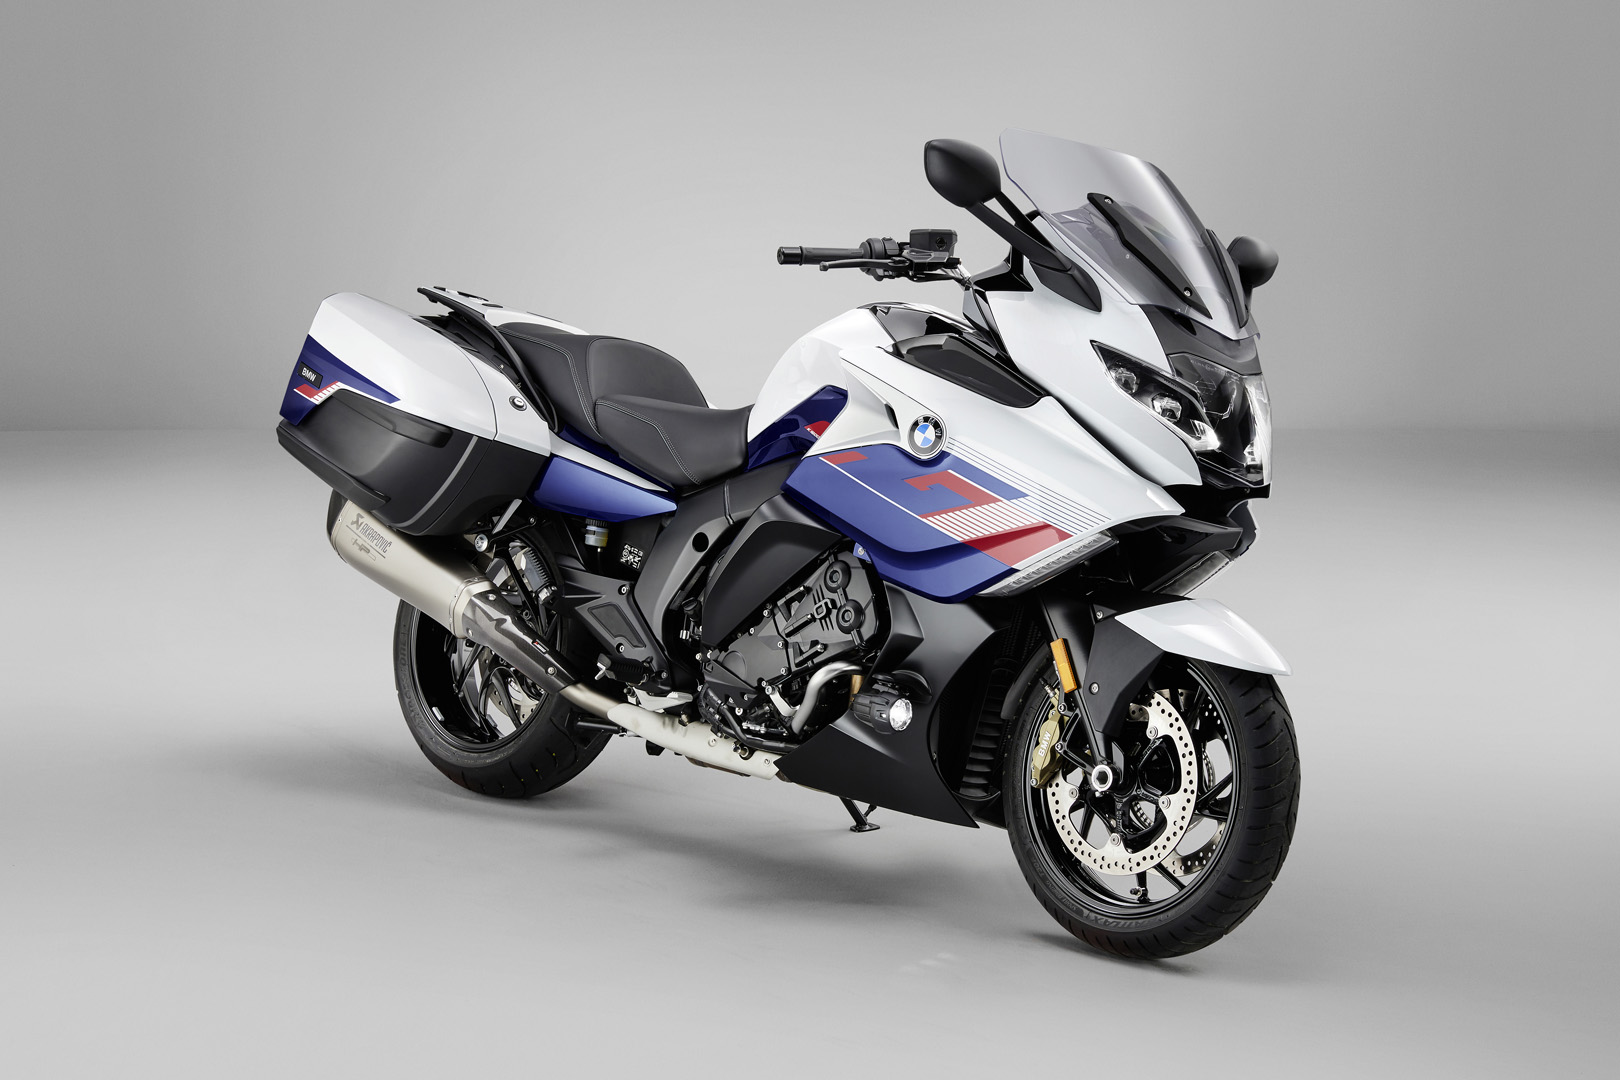 New BMW K 1600 mod… | Big tourer motorcycles are back!